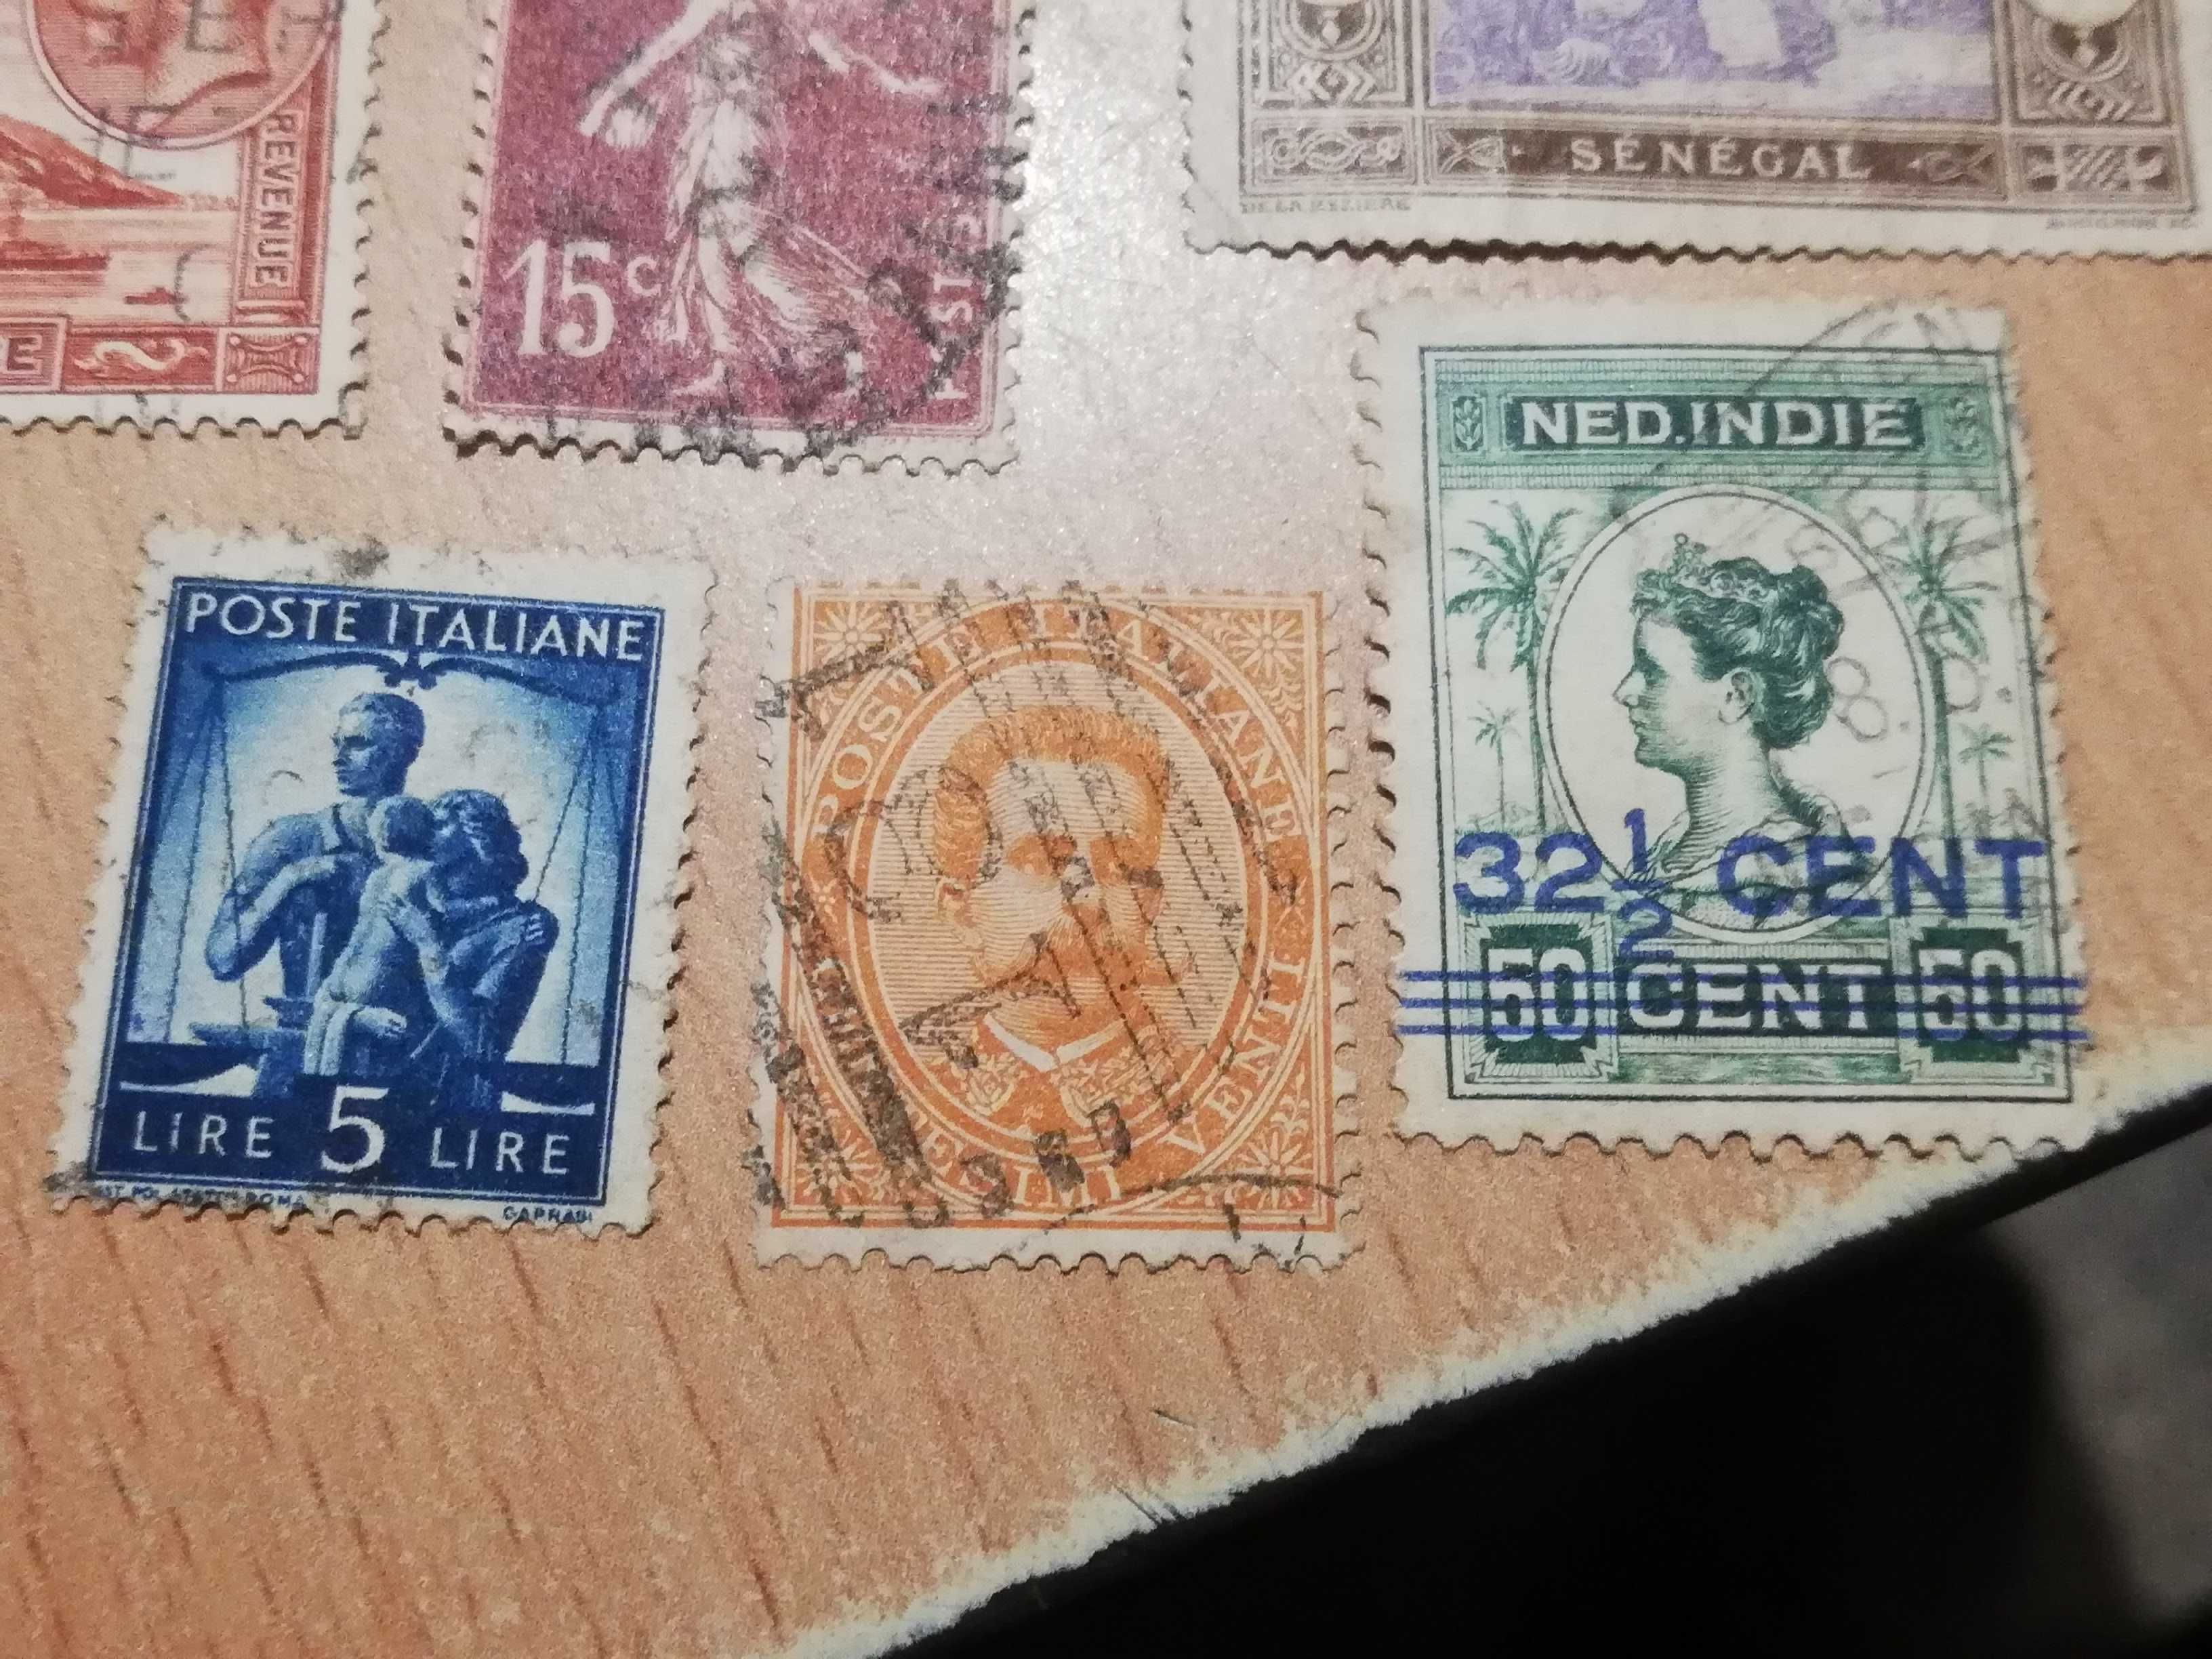 Stare znaczki pocztowe 34 sztuk PRL    S